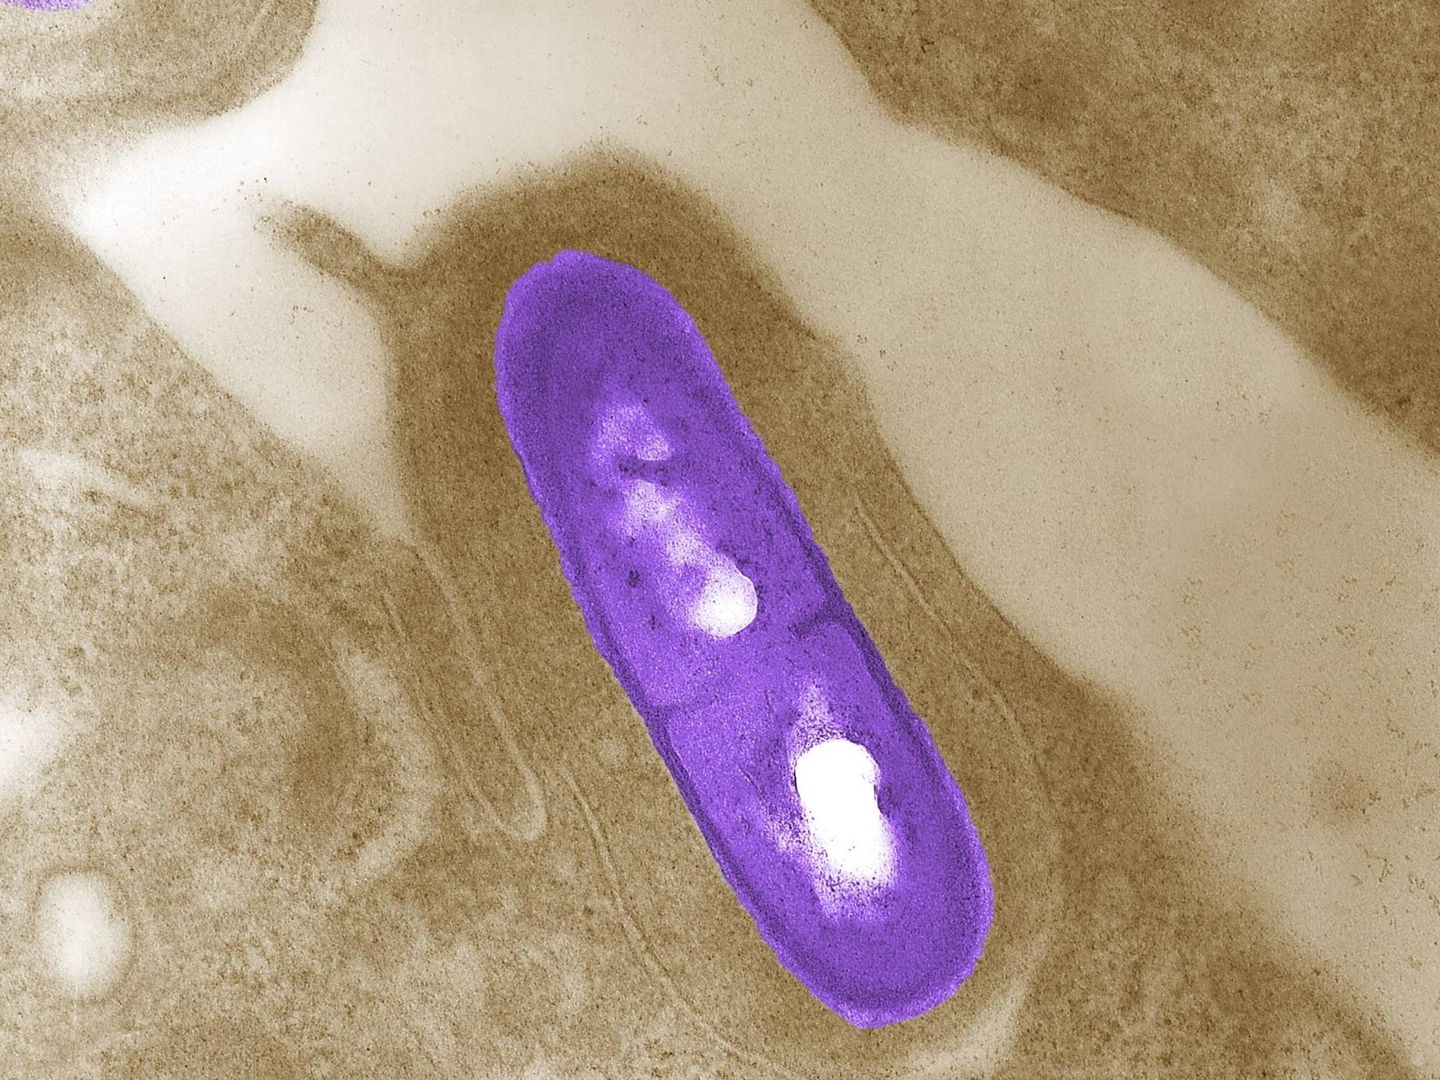 Imagen microscópica de una bacteria Listeria monocytogenes. (Reuters)